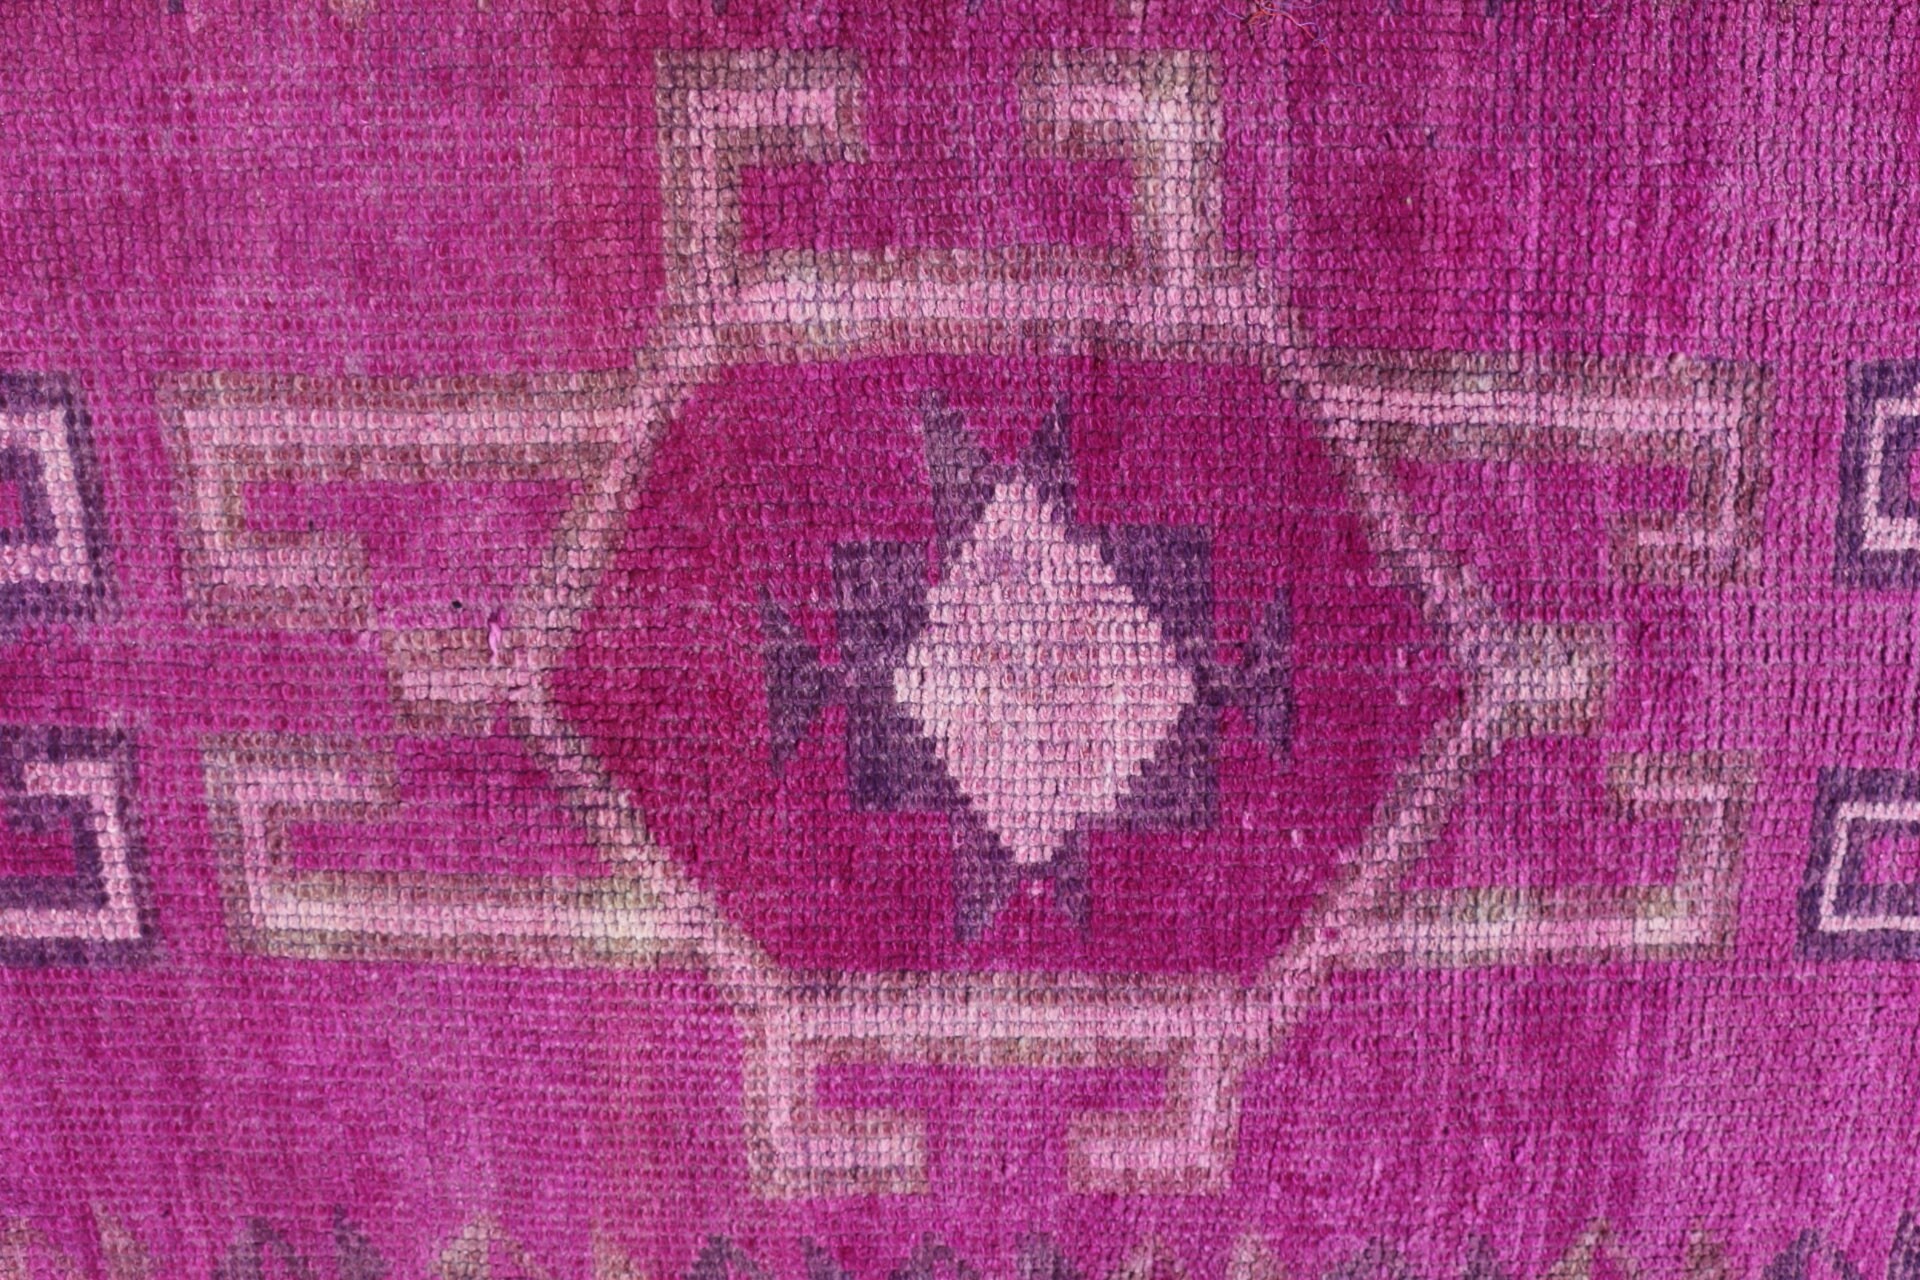 Floor Rug, Pink Moroccan Rugs, Wool Rug, Vintage Rug, 3x12.5 ft Runner Rugs, Stair Rugs, Hallway Rugs, Turkish Rug, Rugs for Kitchen